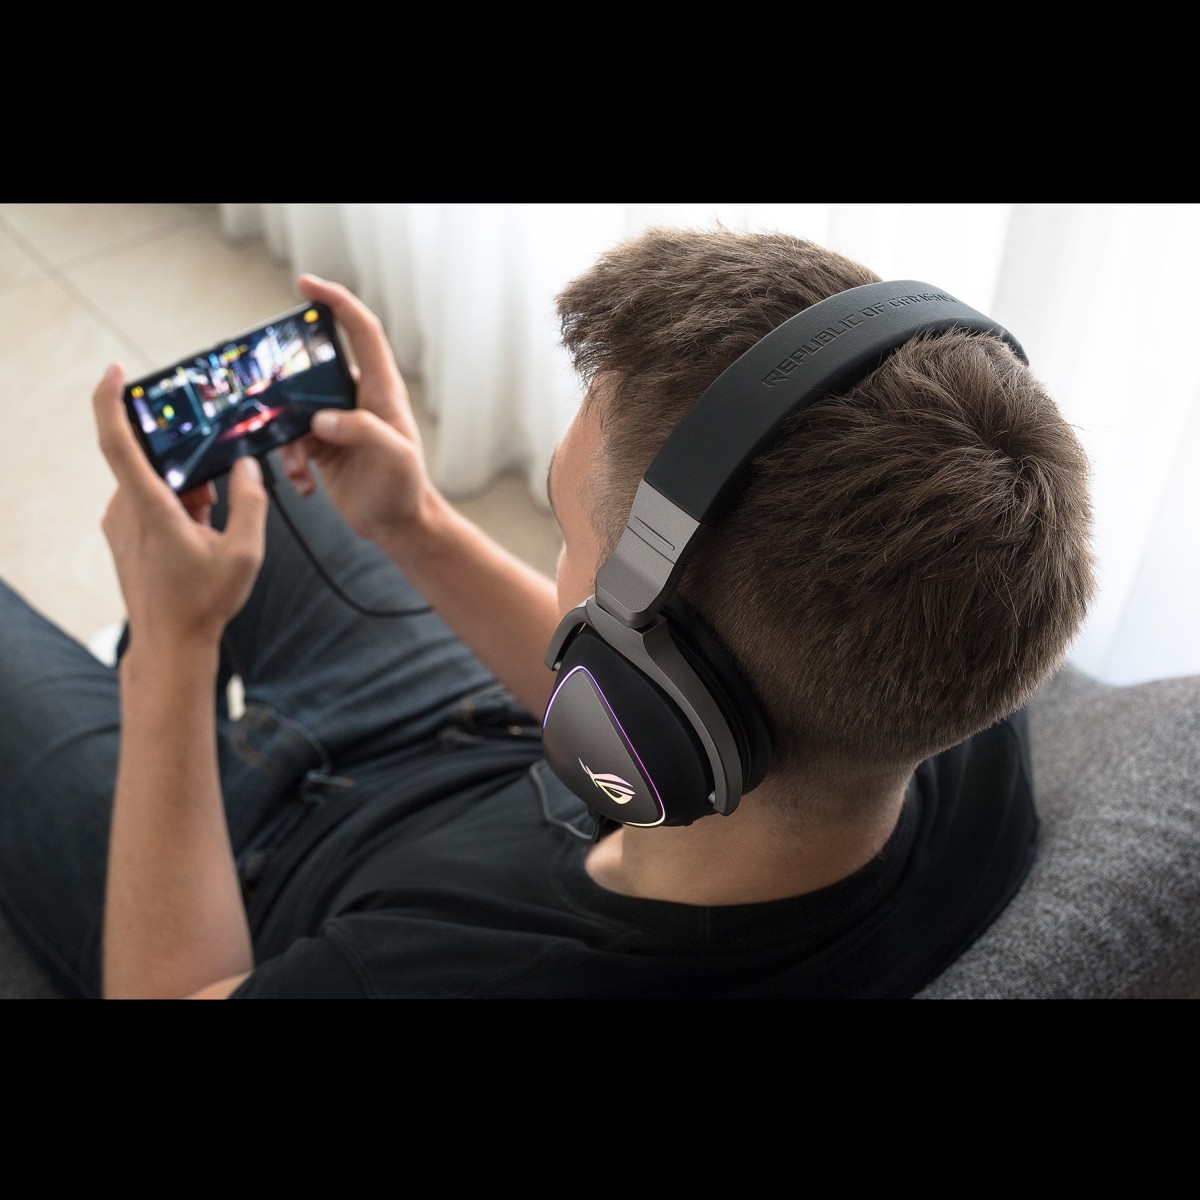 ASUS ROG Delta - Headset - Head-band - Gaming - Black - Binaural - Rotary